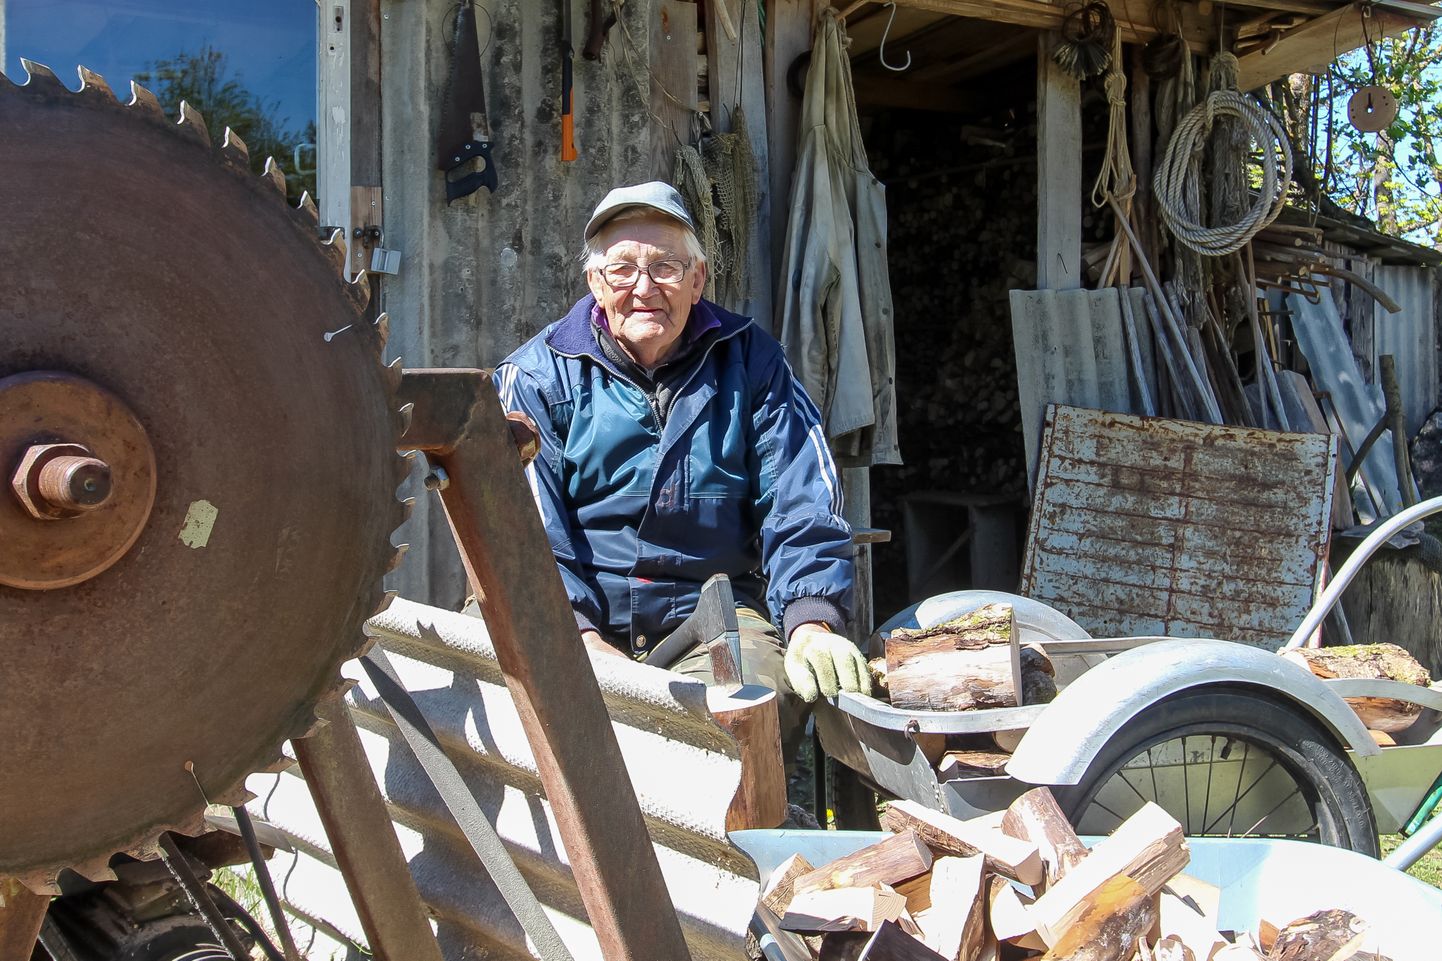 IKKA TÖÖD TEHES: Teisipäeval, oma 86. sünnipäeval nautis Oskar Peet päikeselist kevadilma küttepuude lõhkumisega.